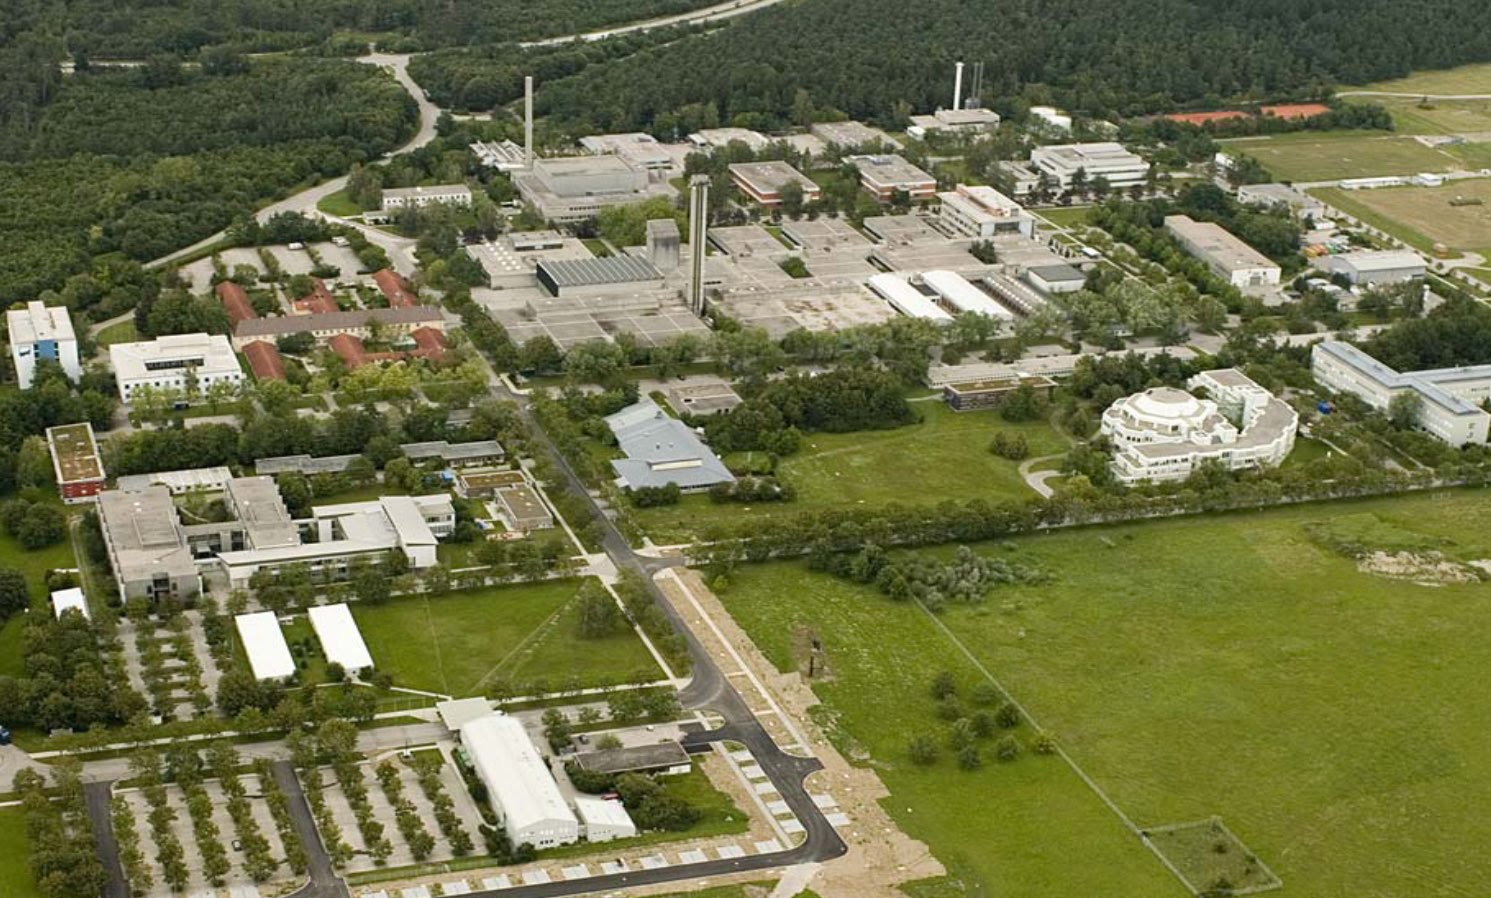 亥姆霍茲慕尼黑研究中心-德國環境與健康研究中心HMGU（上圖），是聯合會成員之一，以健康與環境為主要研究題目。